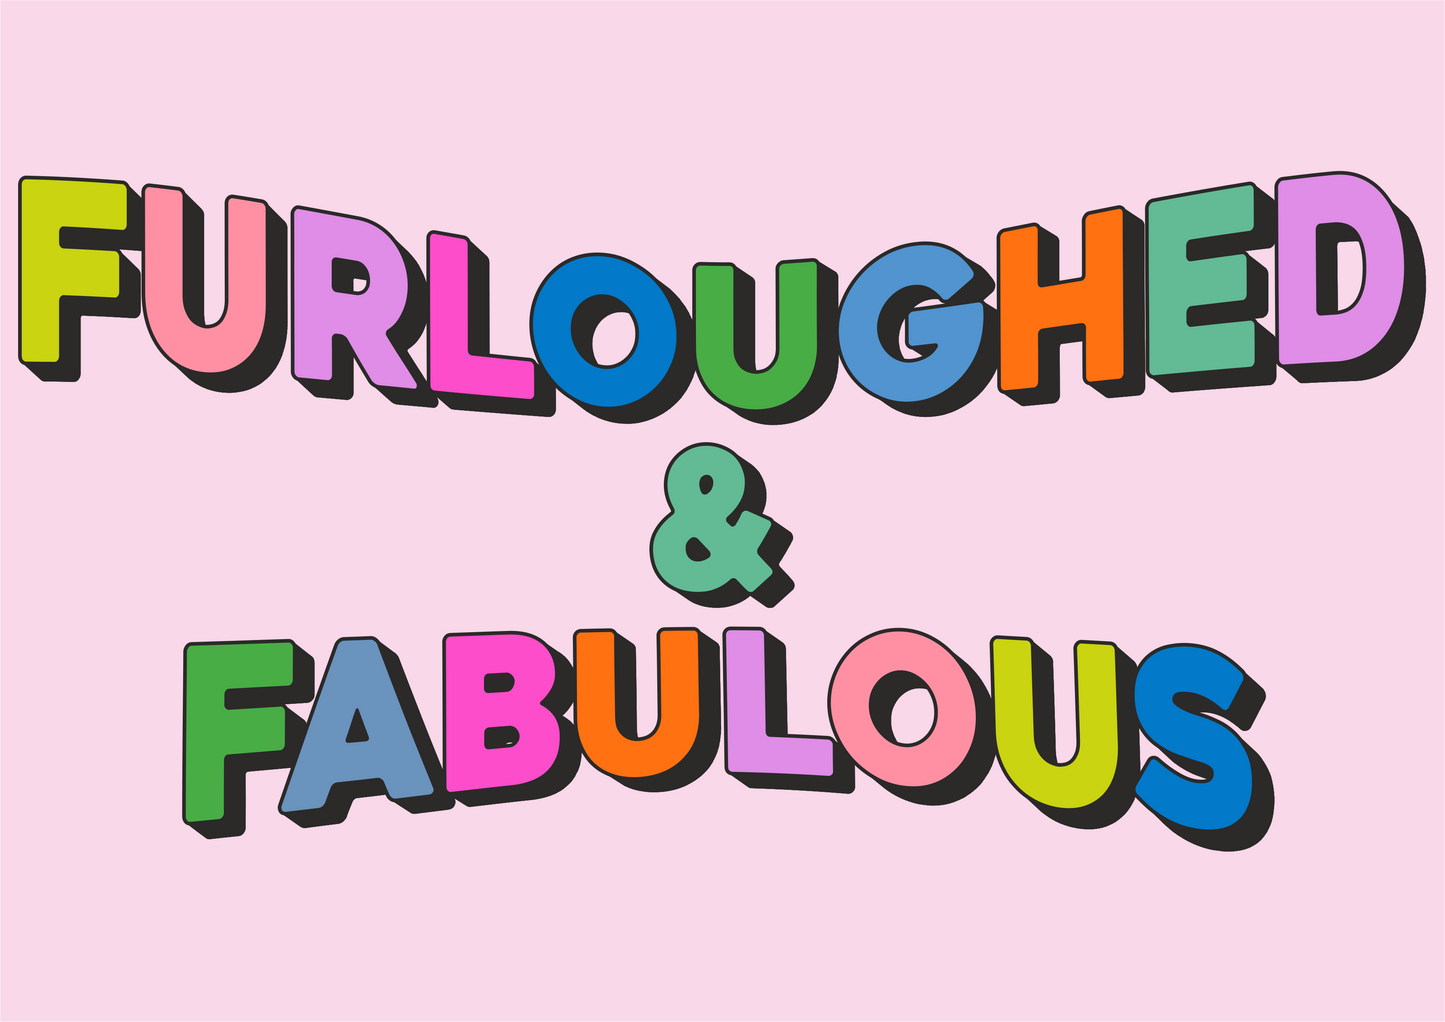 Furloughed & Fabulous